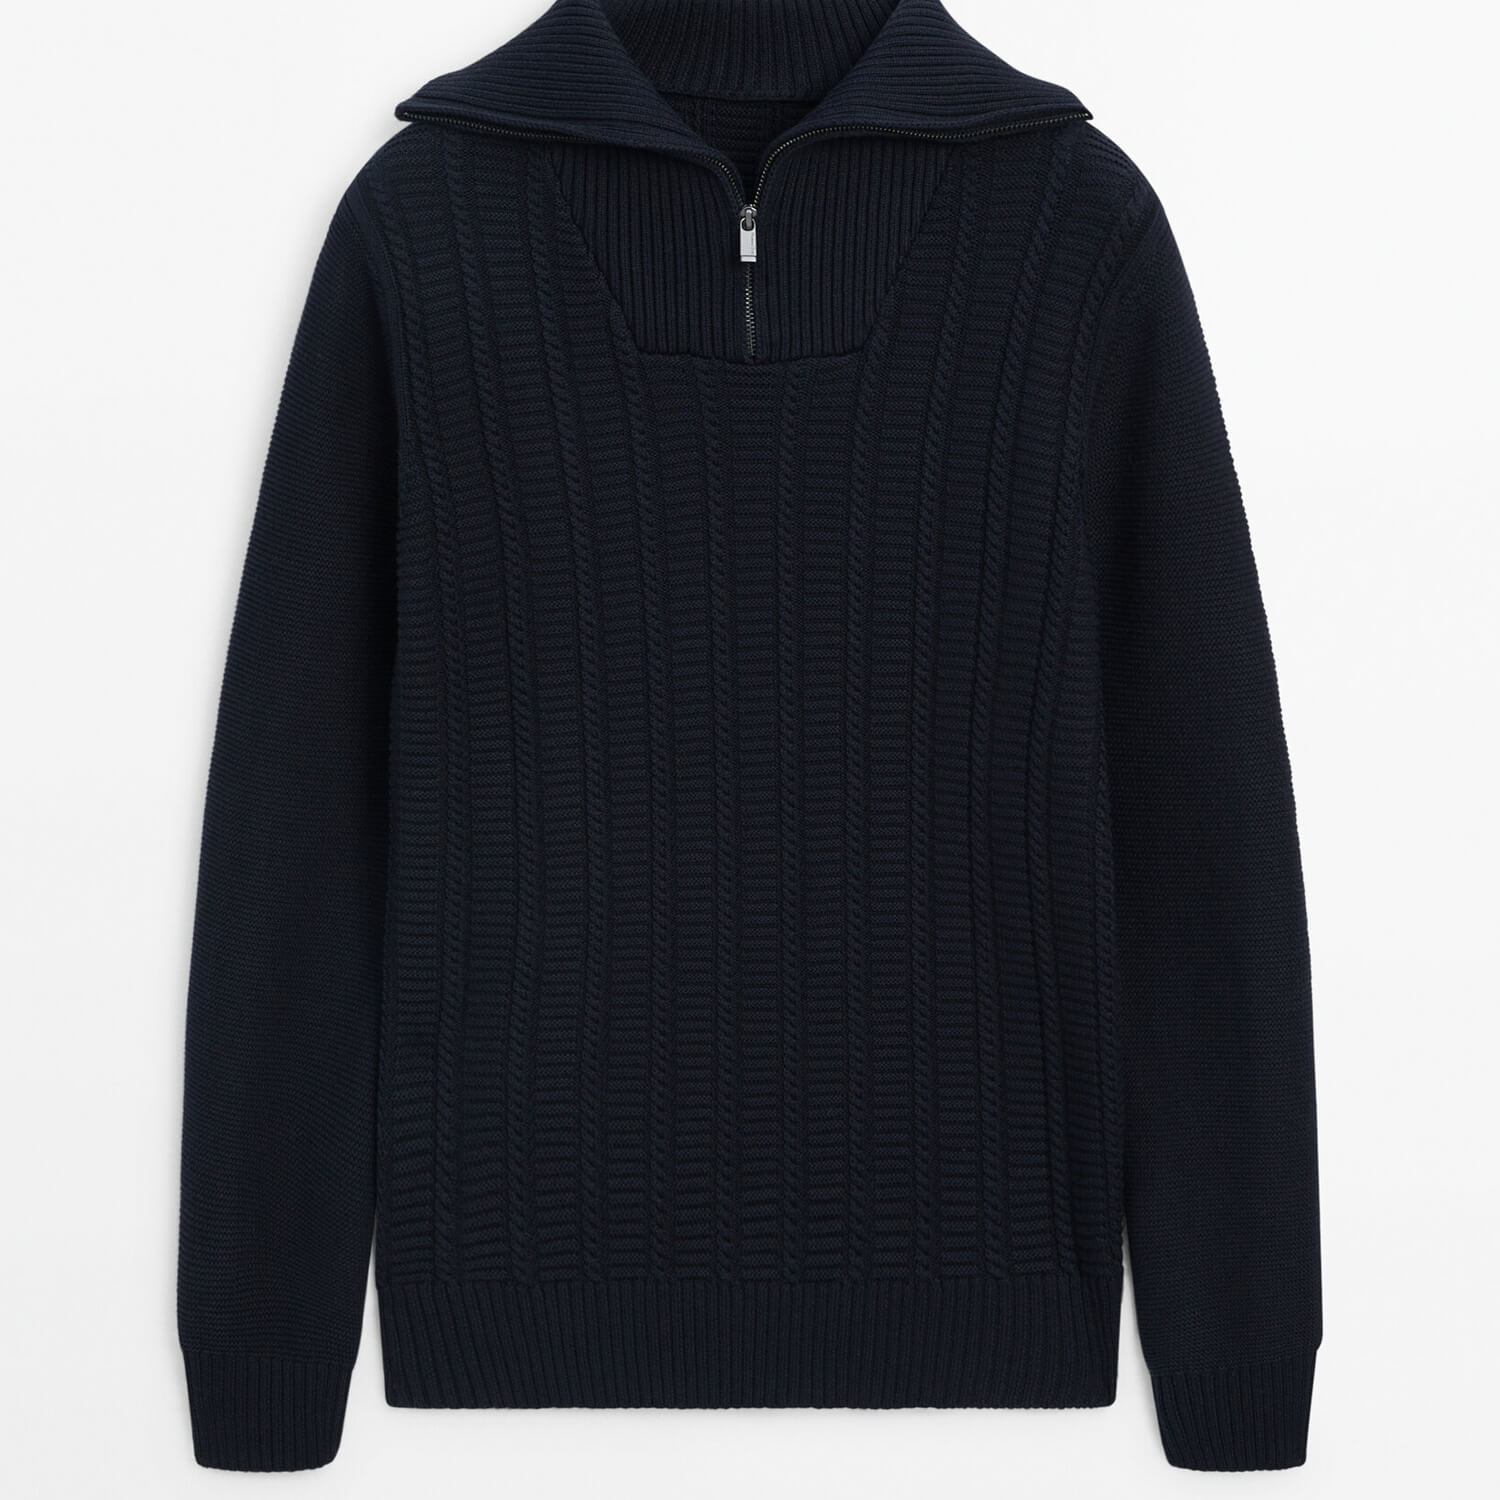 Свитер Massimo Dutti Mock Neck Cable Knit, темно-синий свитер massimo dutti mock neck knit sweater серый